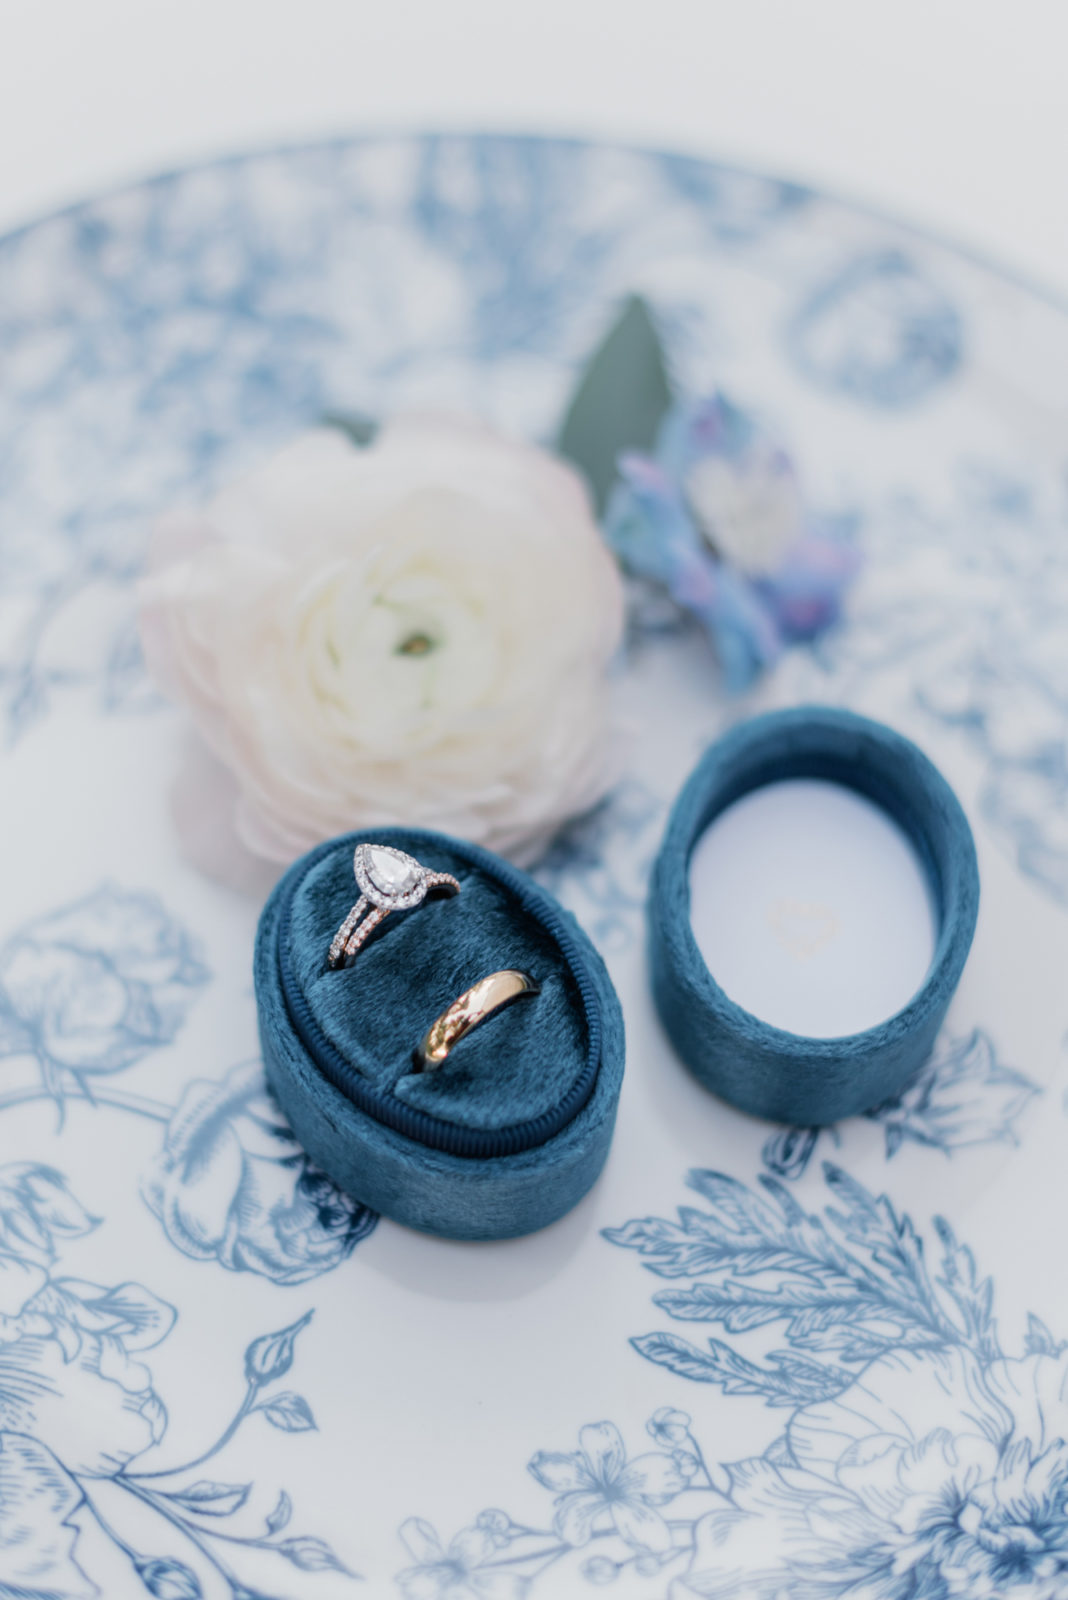 Oval velvet blue ring box for wedding day details